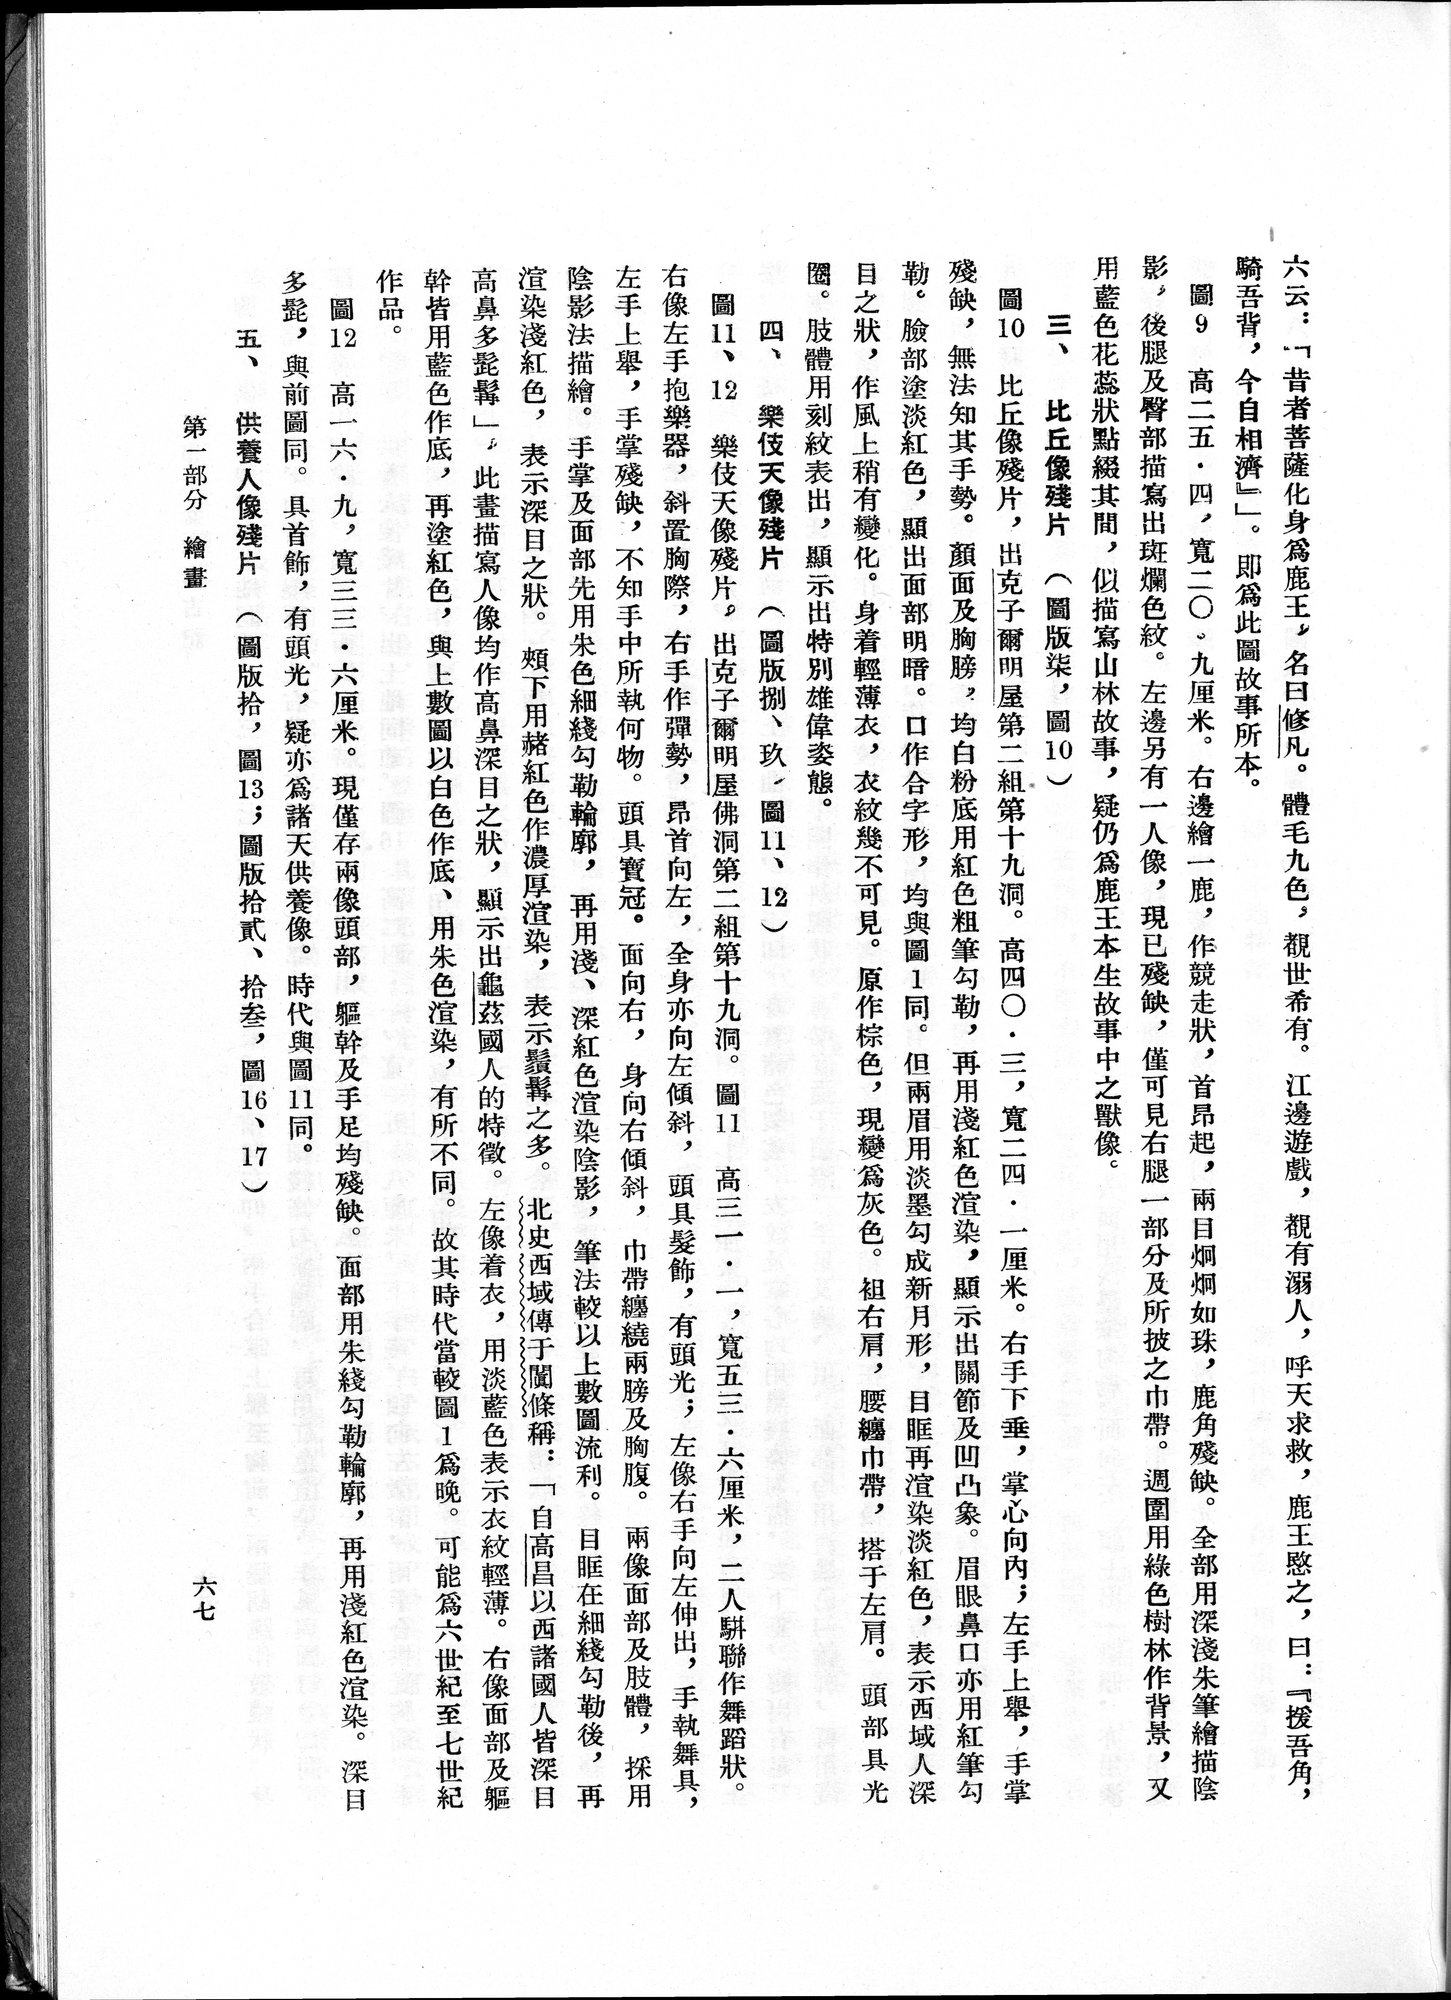 塔里木盆地考古記 : vol.1 / Page 131 (Grayscale High Resolution Image)